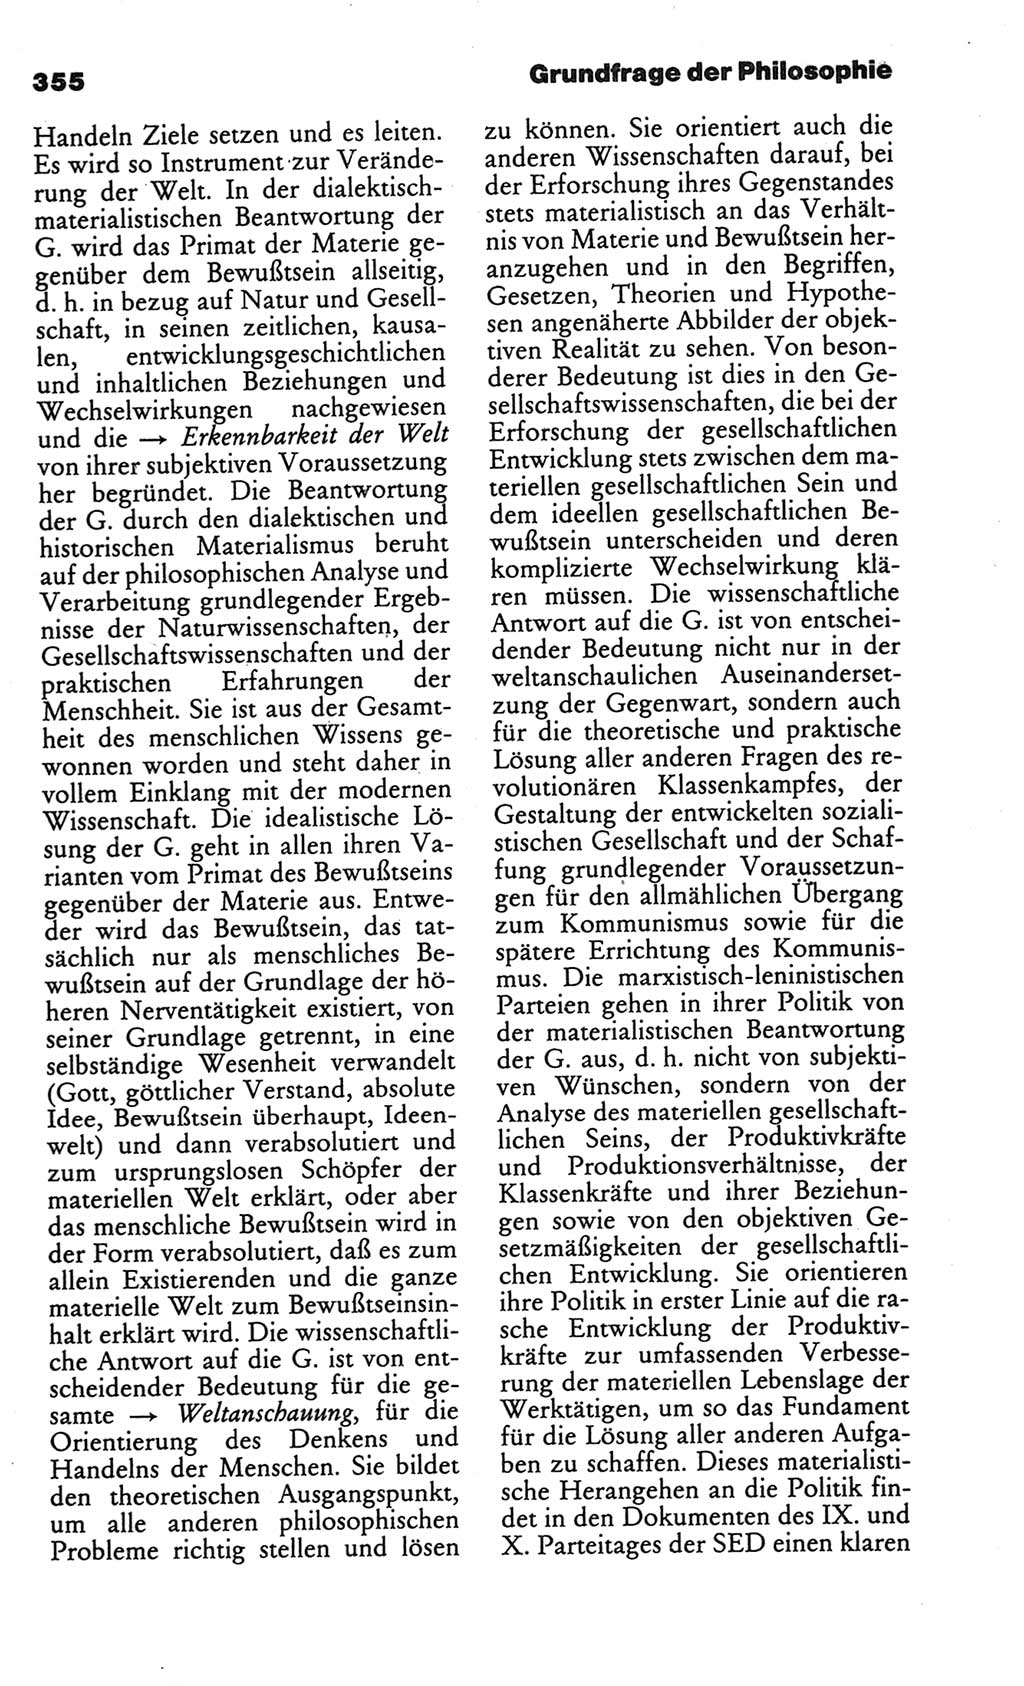 Kleines politisches Wörterbuch [Deutsche Demokratische Republik (DDR)] 1986, Seite 355 (Kl. pol. Wb. DDR 1986, S. 355)